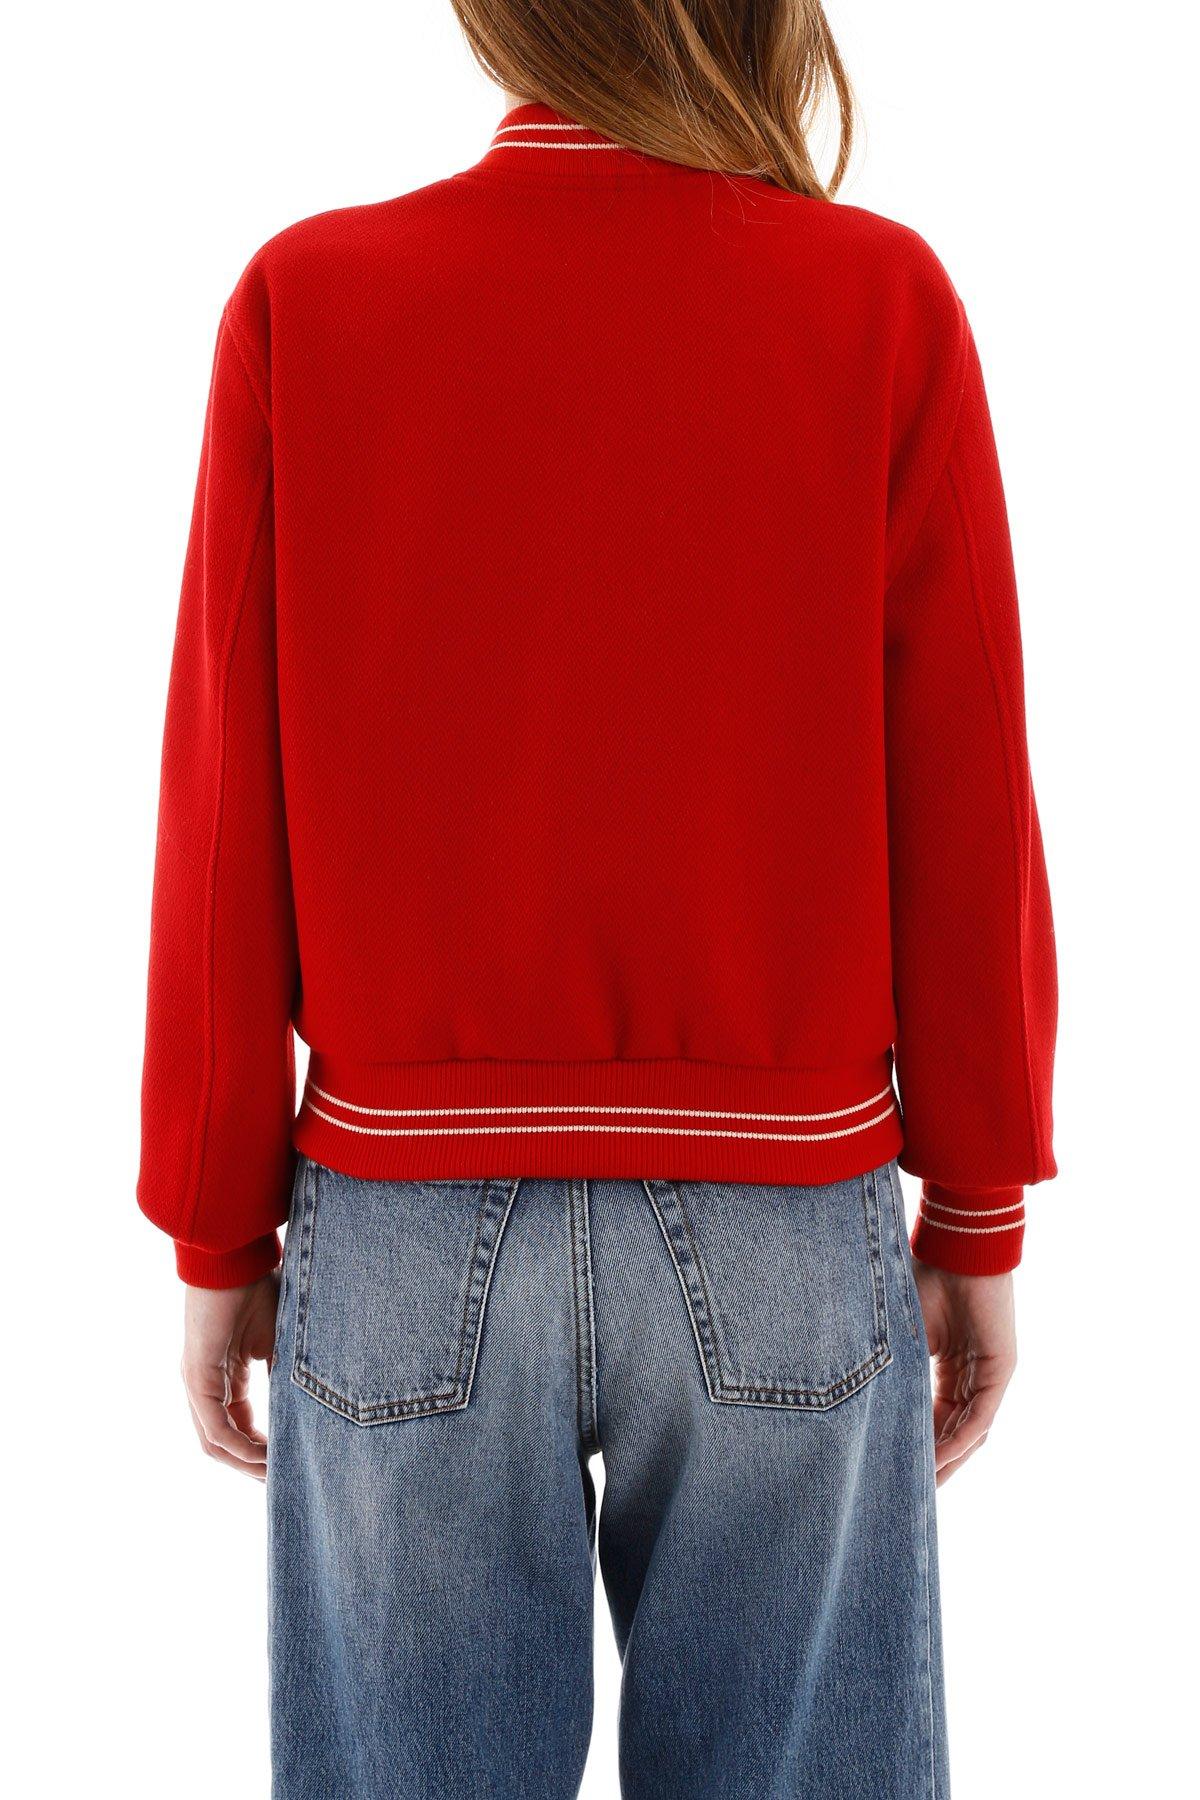 Celine Wool Logo Teddy Jacket in Red | Lyst Canada